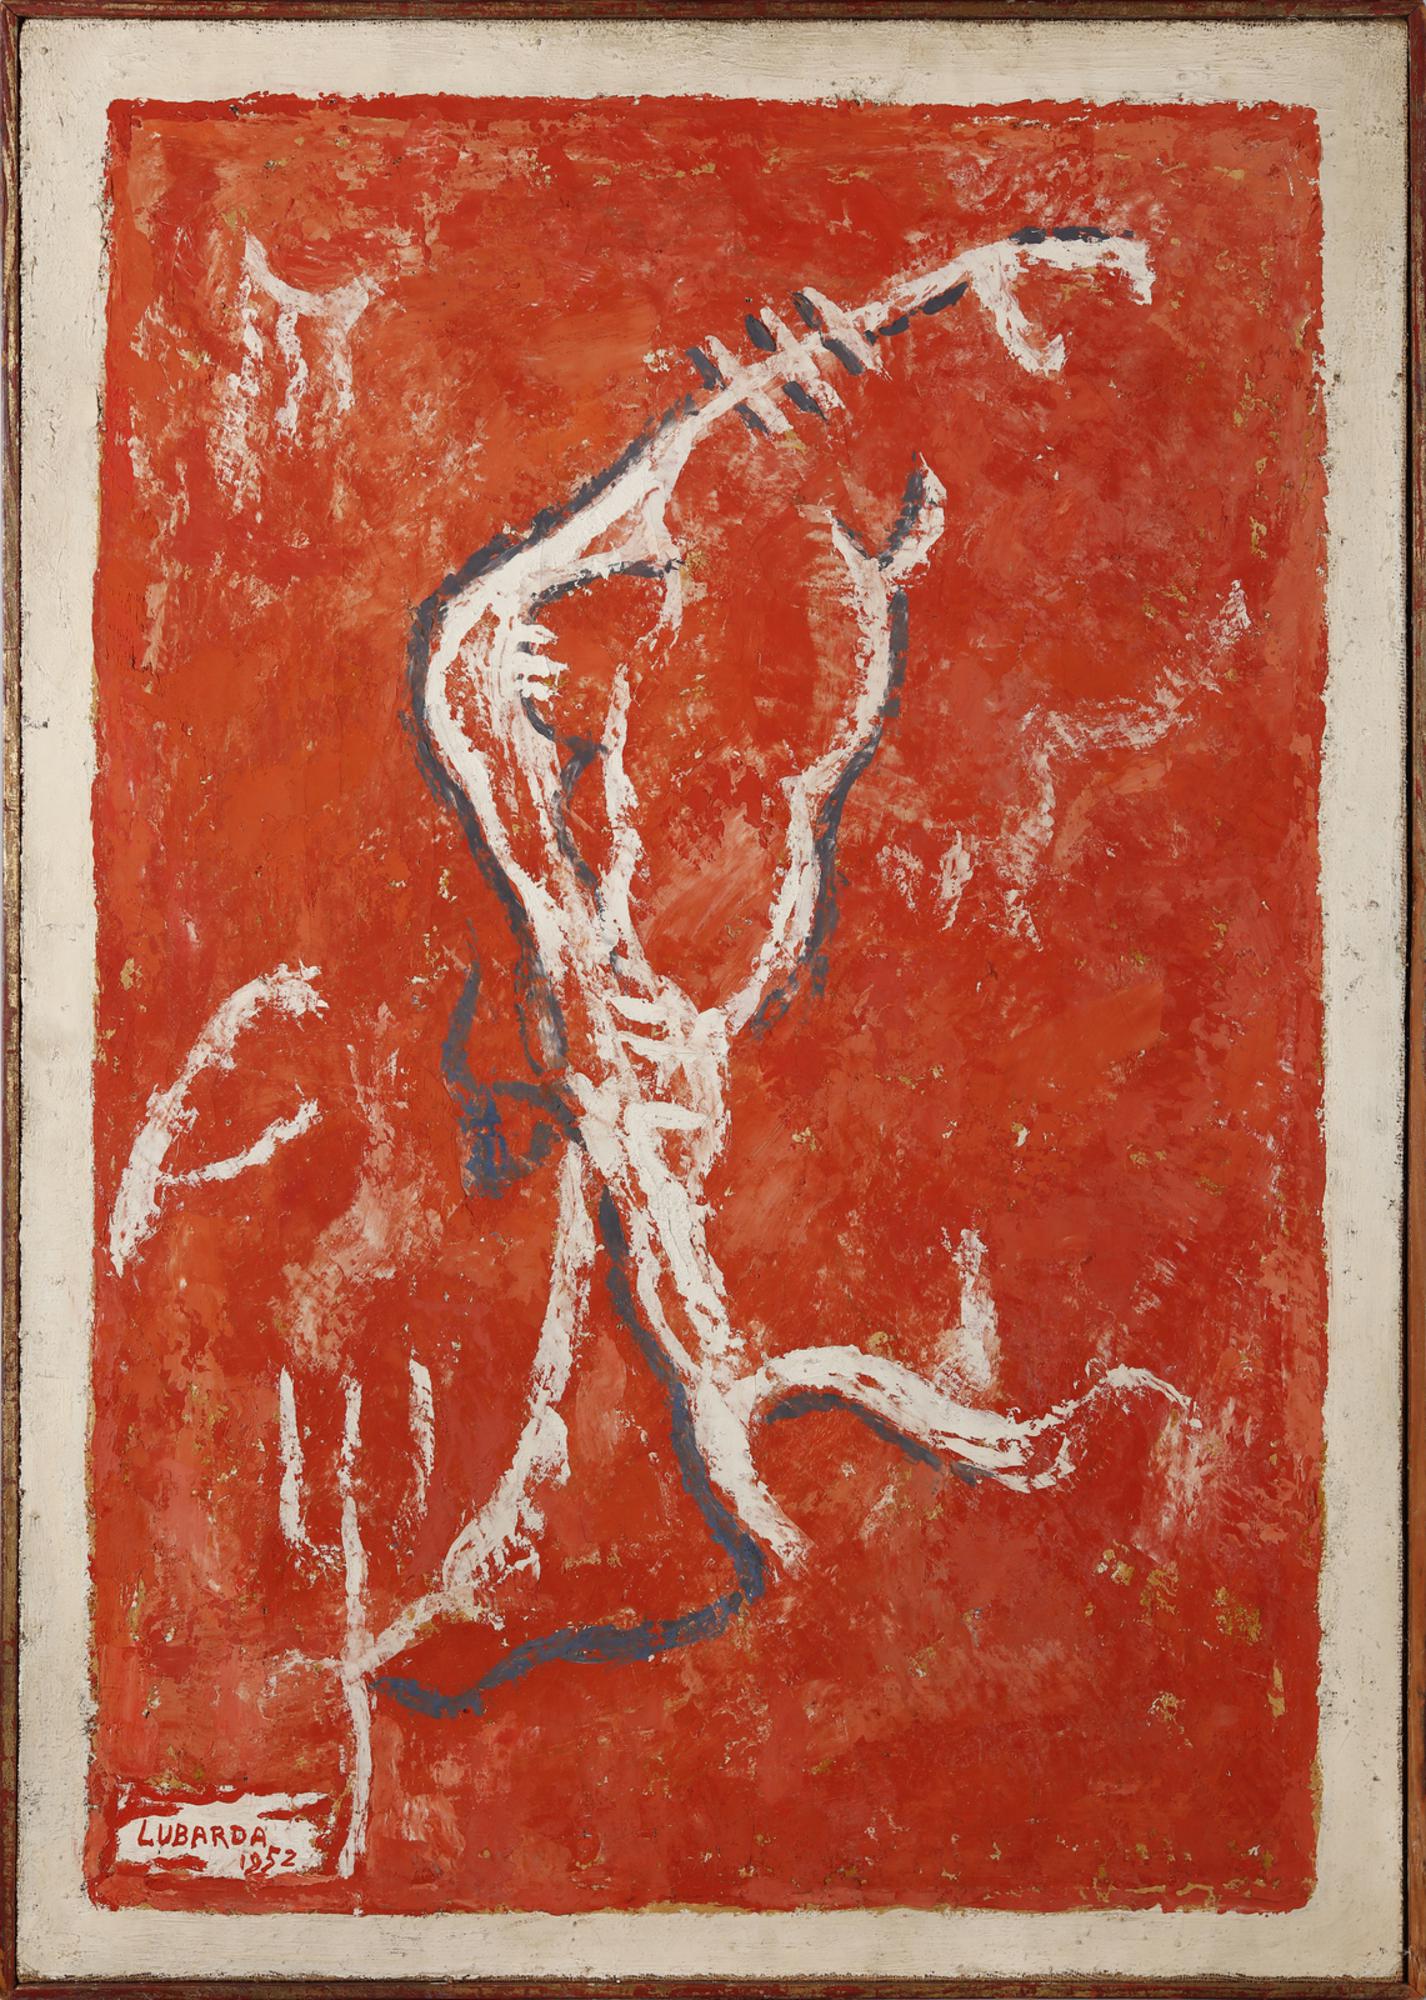 Peter Lubarda (1907 - 1974) SENZA TITOLO tecnica mista su tela, cm 98x69 1952...